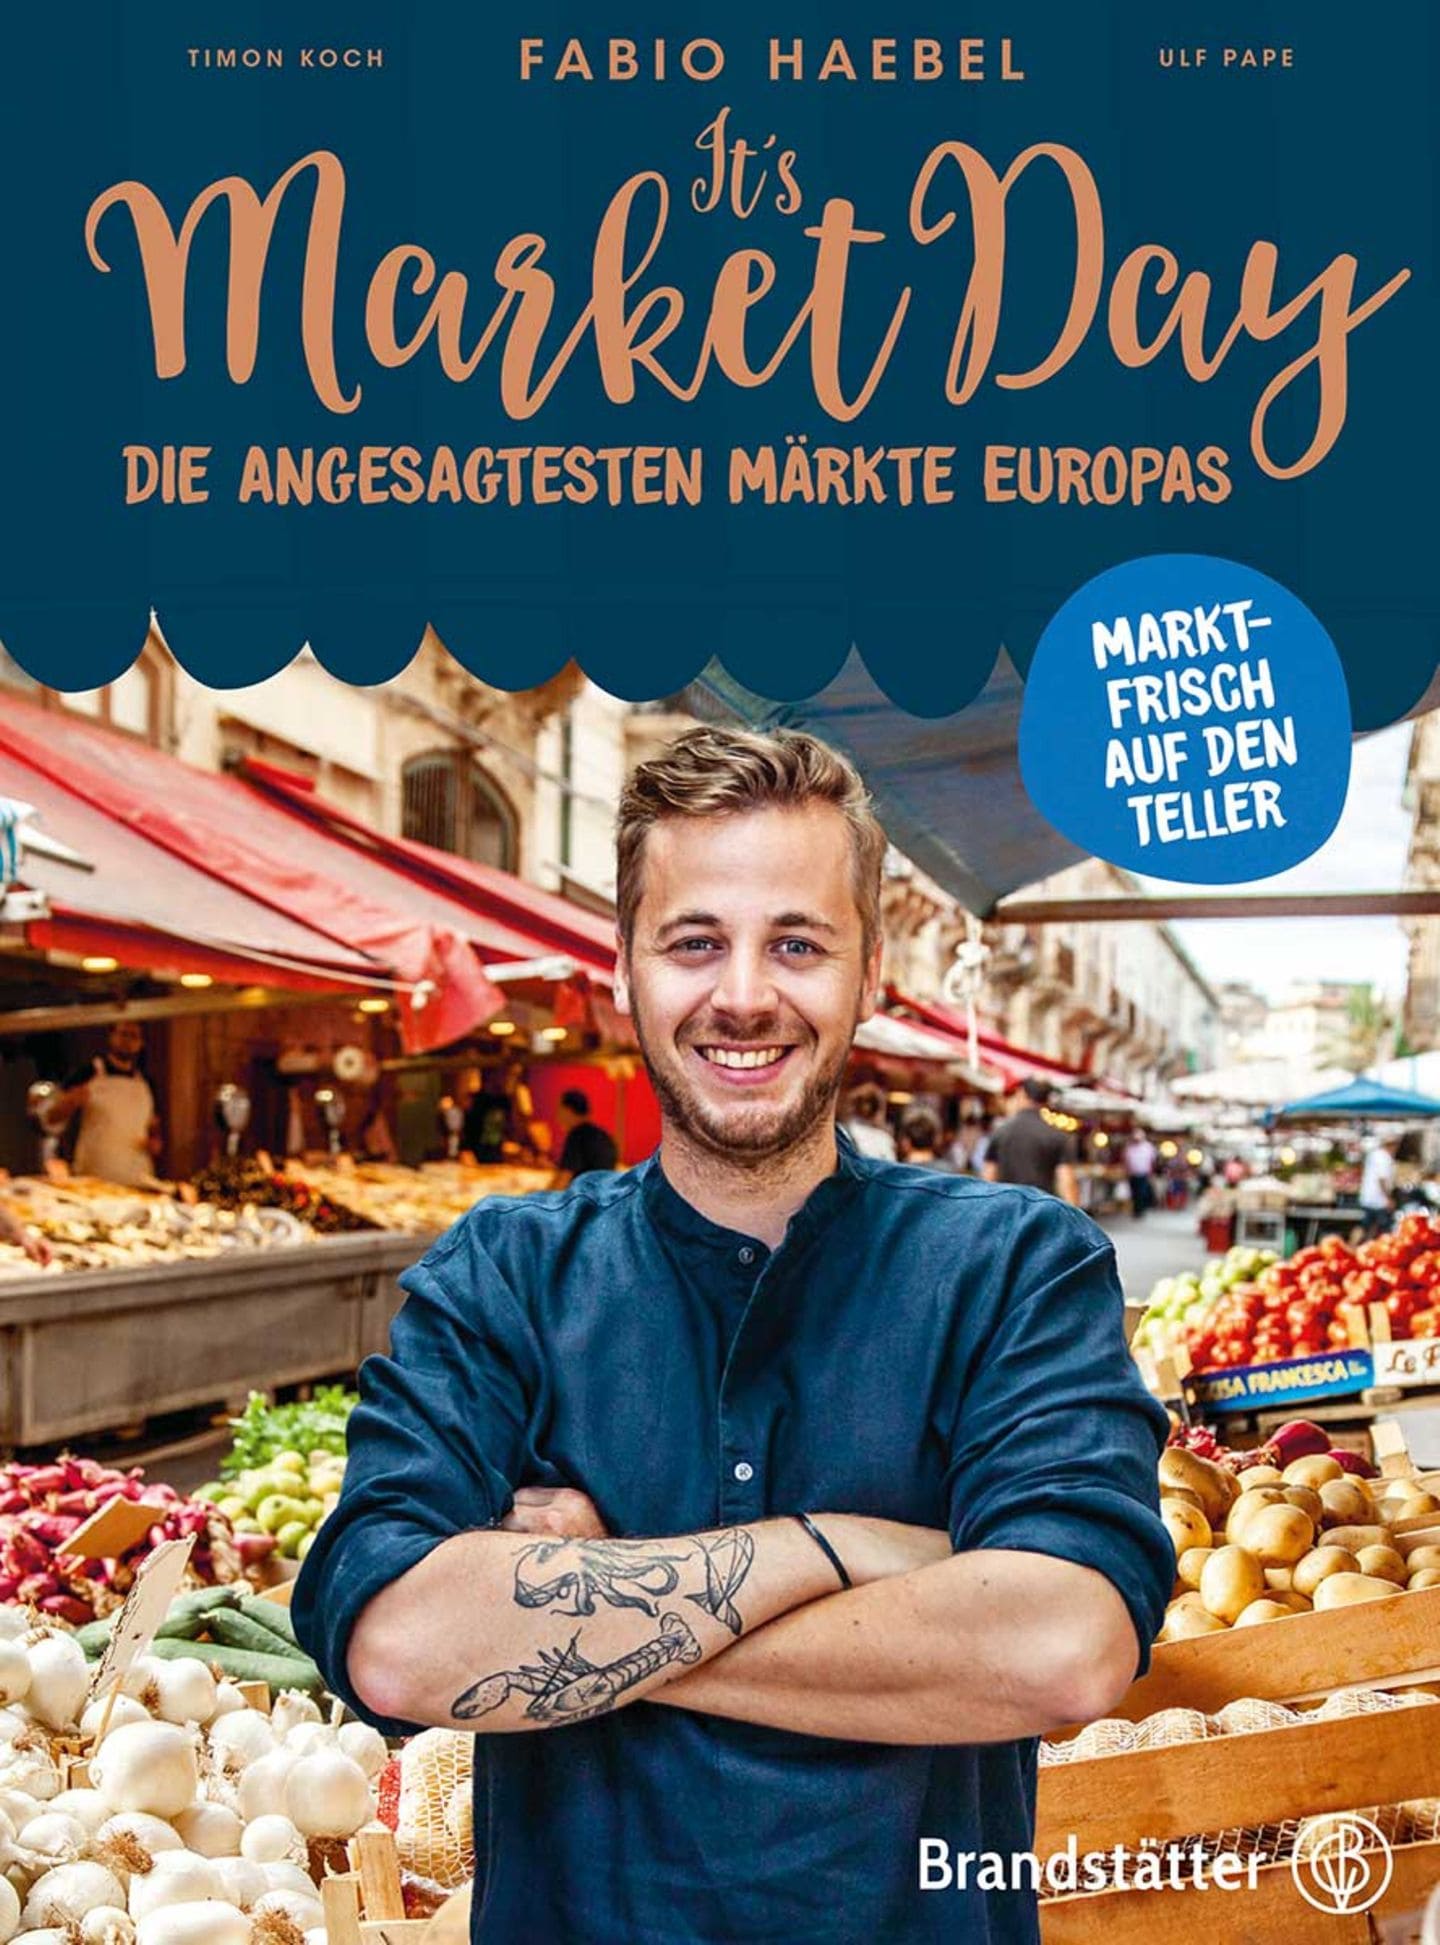 Kochbuch von Fabio Haebel "It's Market Day"